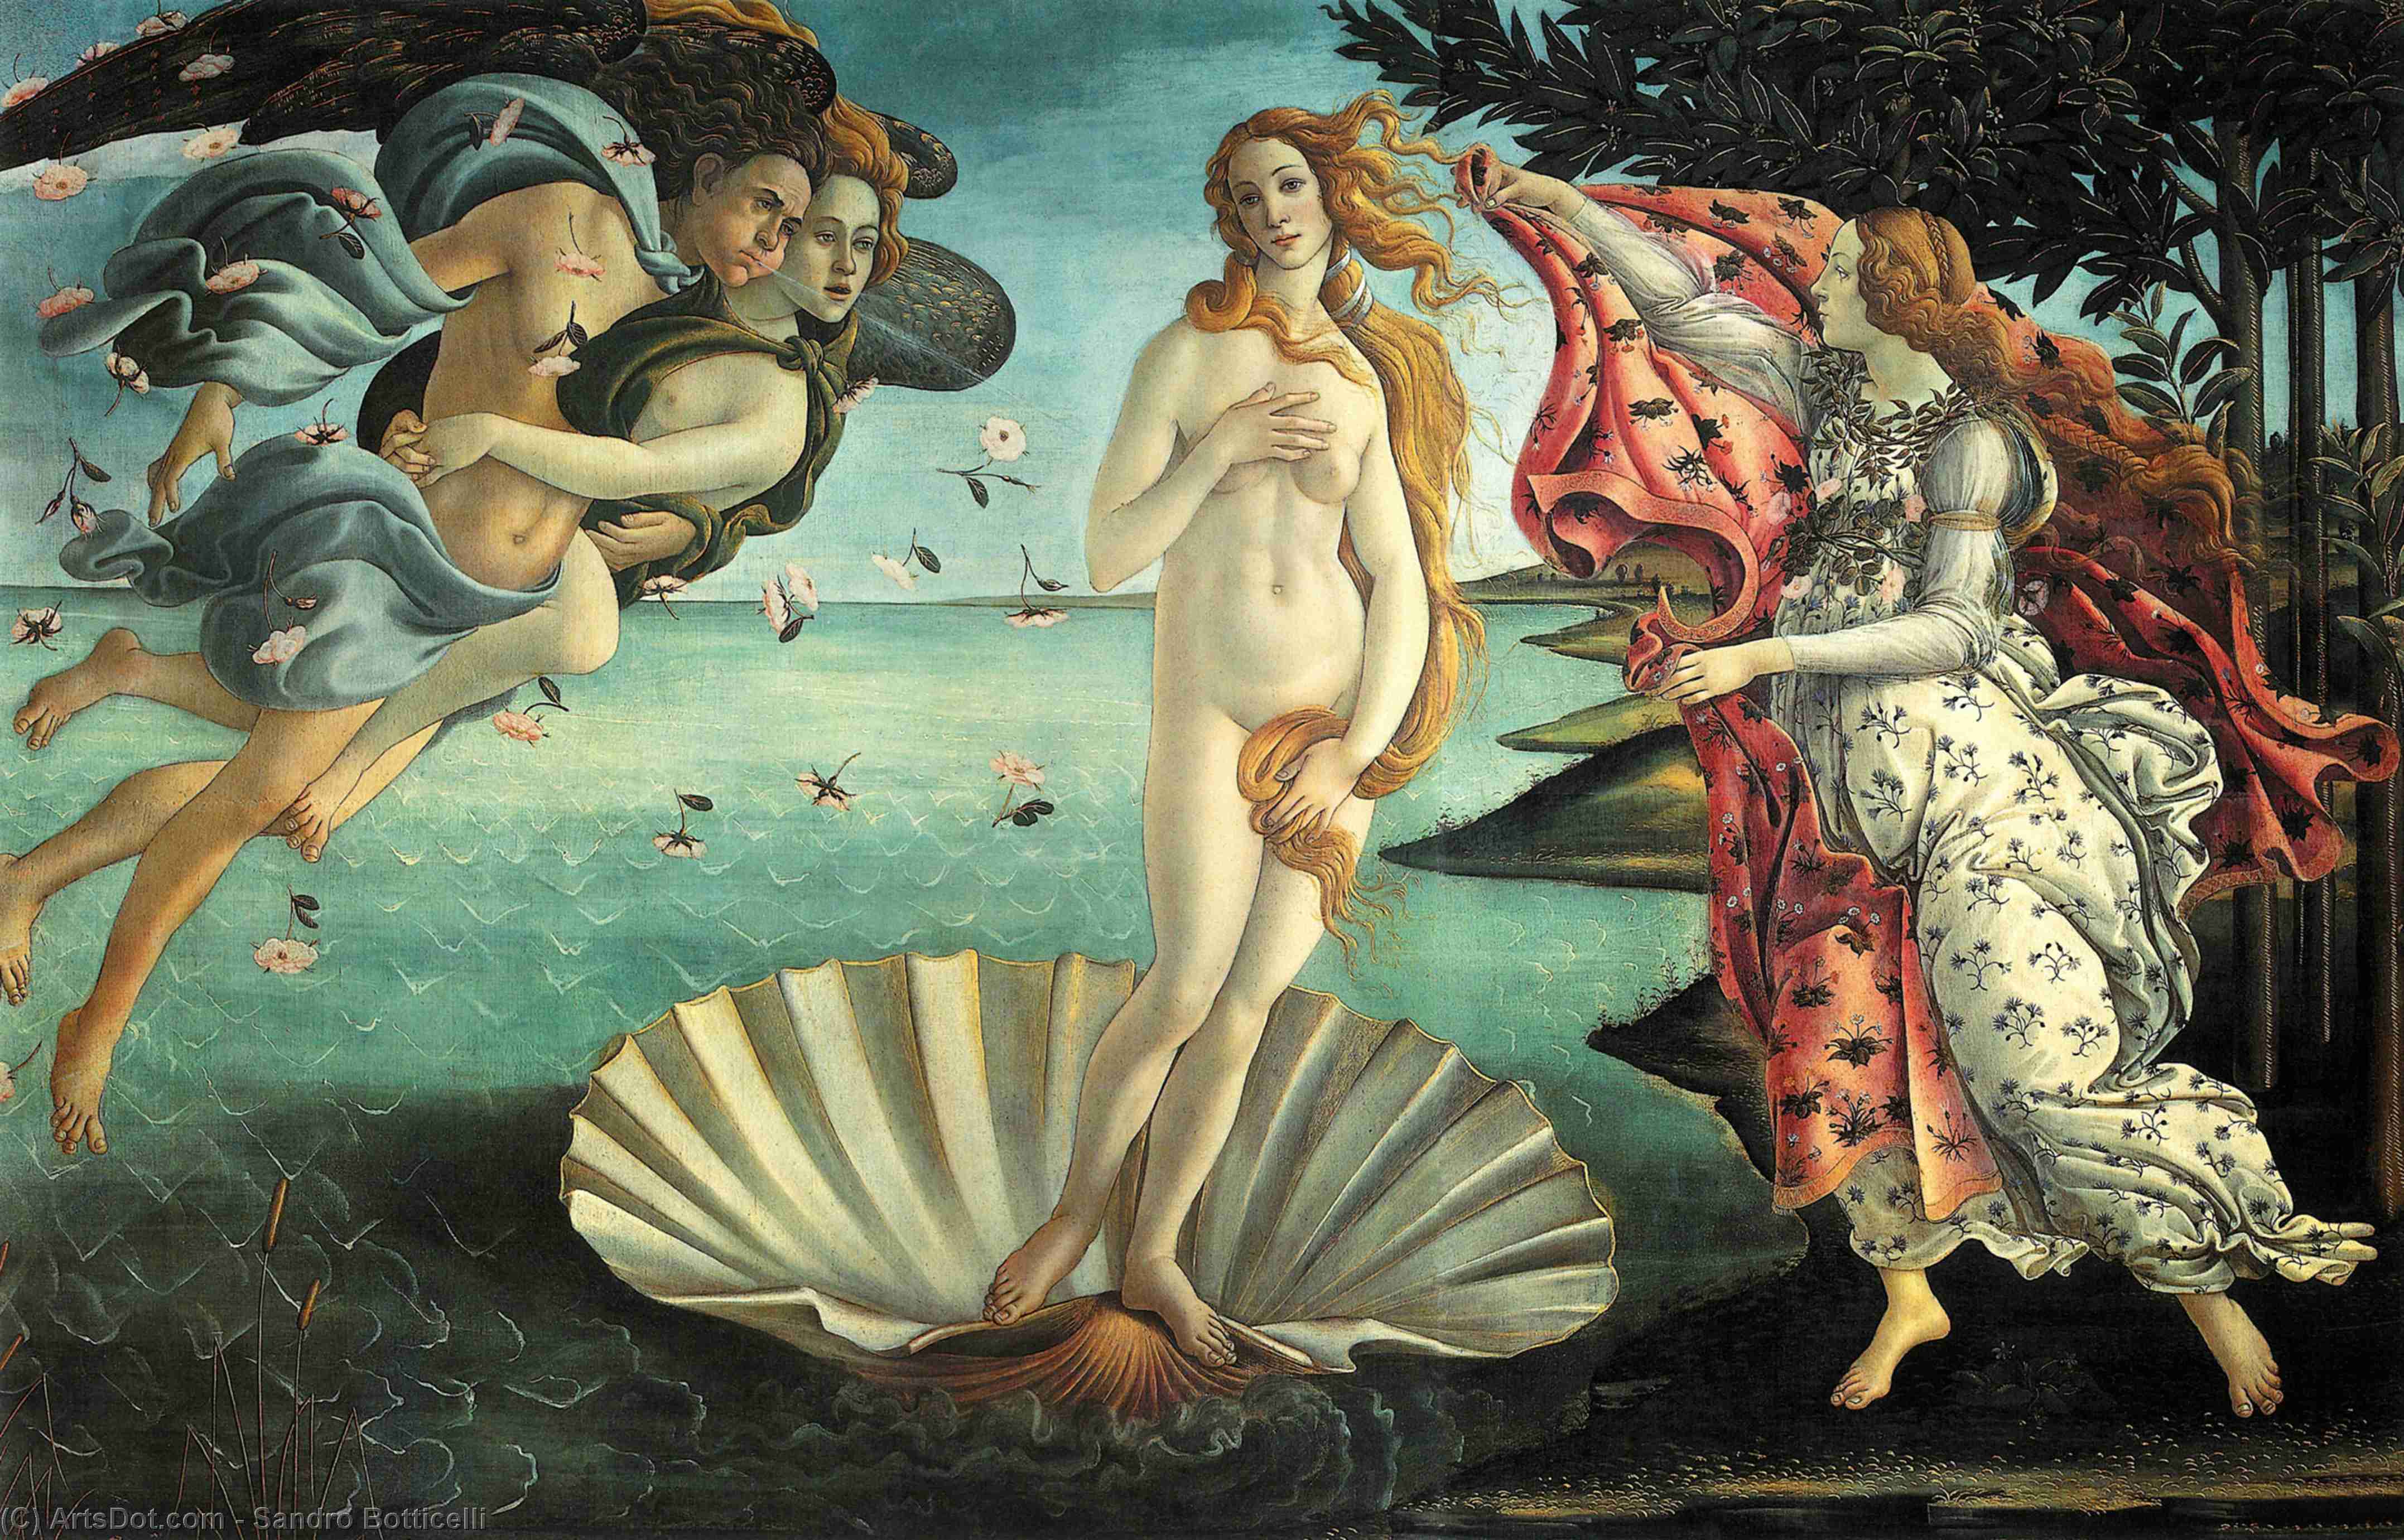 Ordinare Stampe Di Qualità Del Museo La nascita di Venere, 1486 di Sandro Botticelli (1445-1510, Italy) | ArtsDot.com